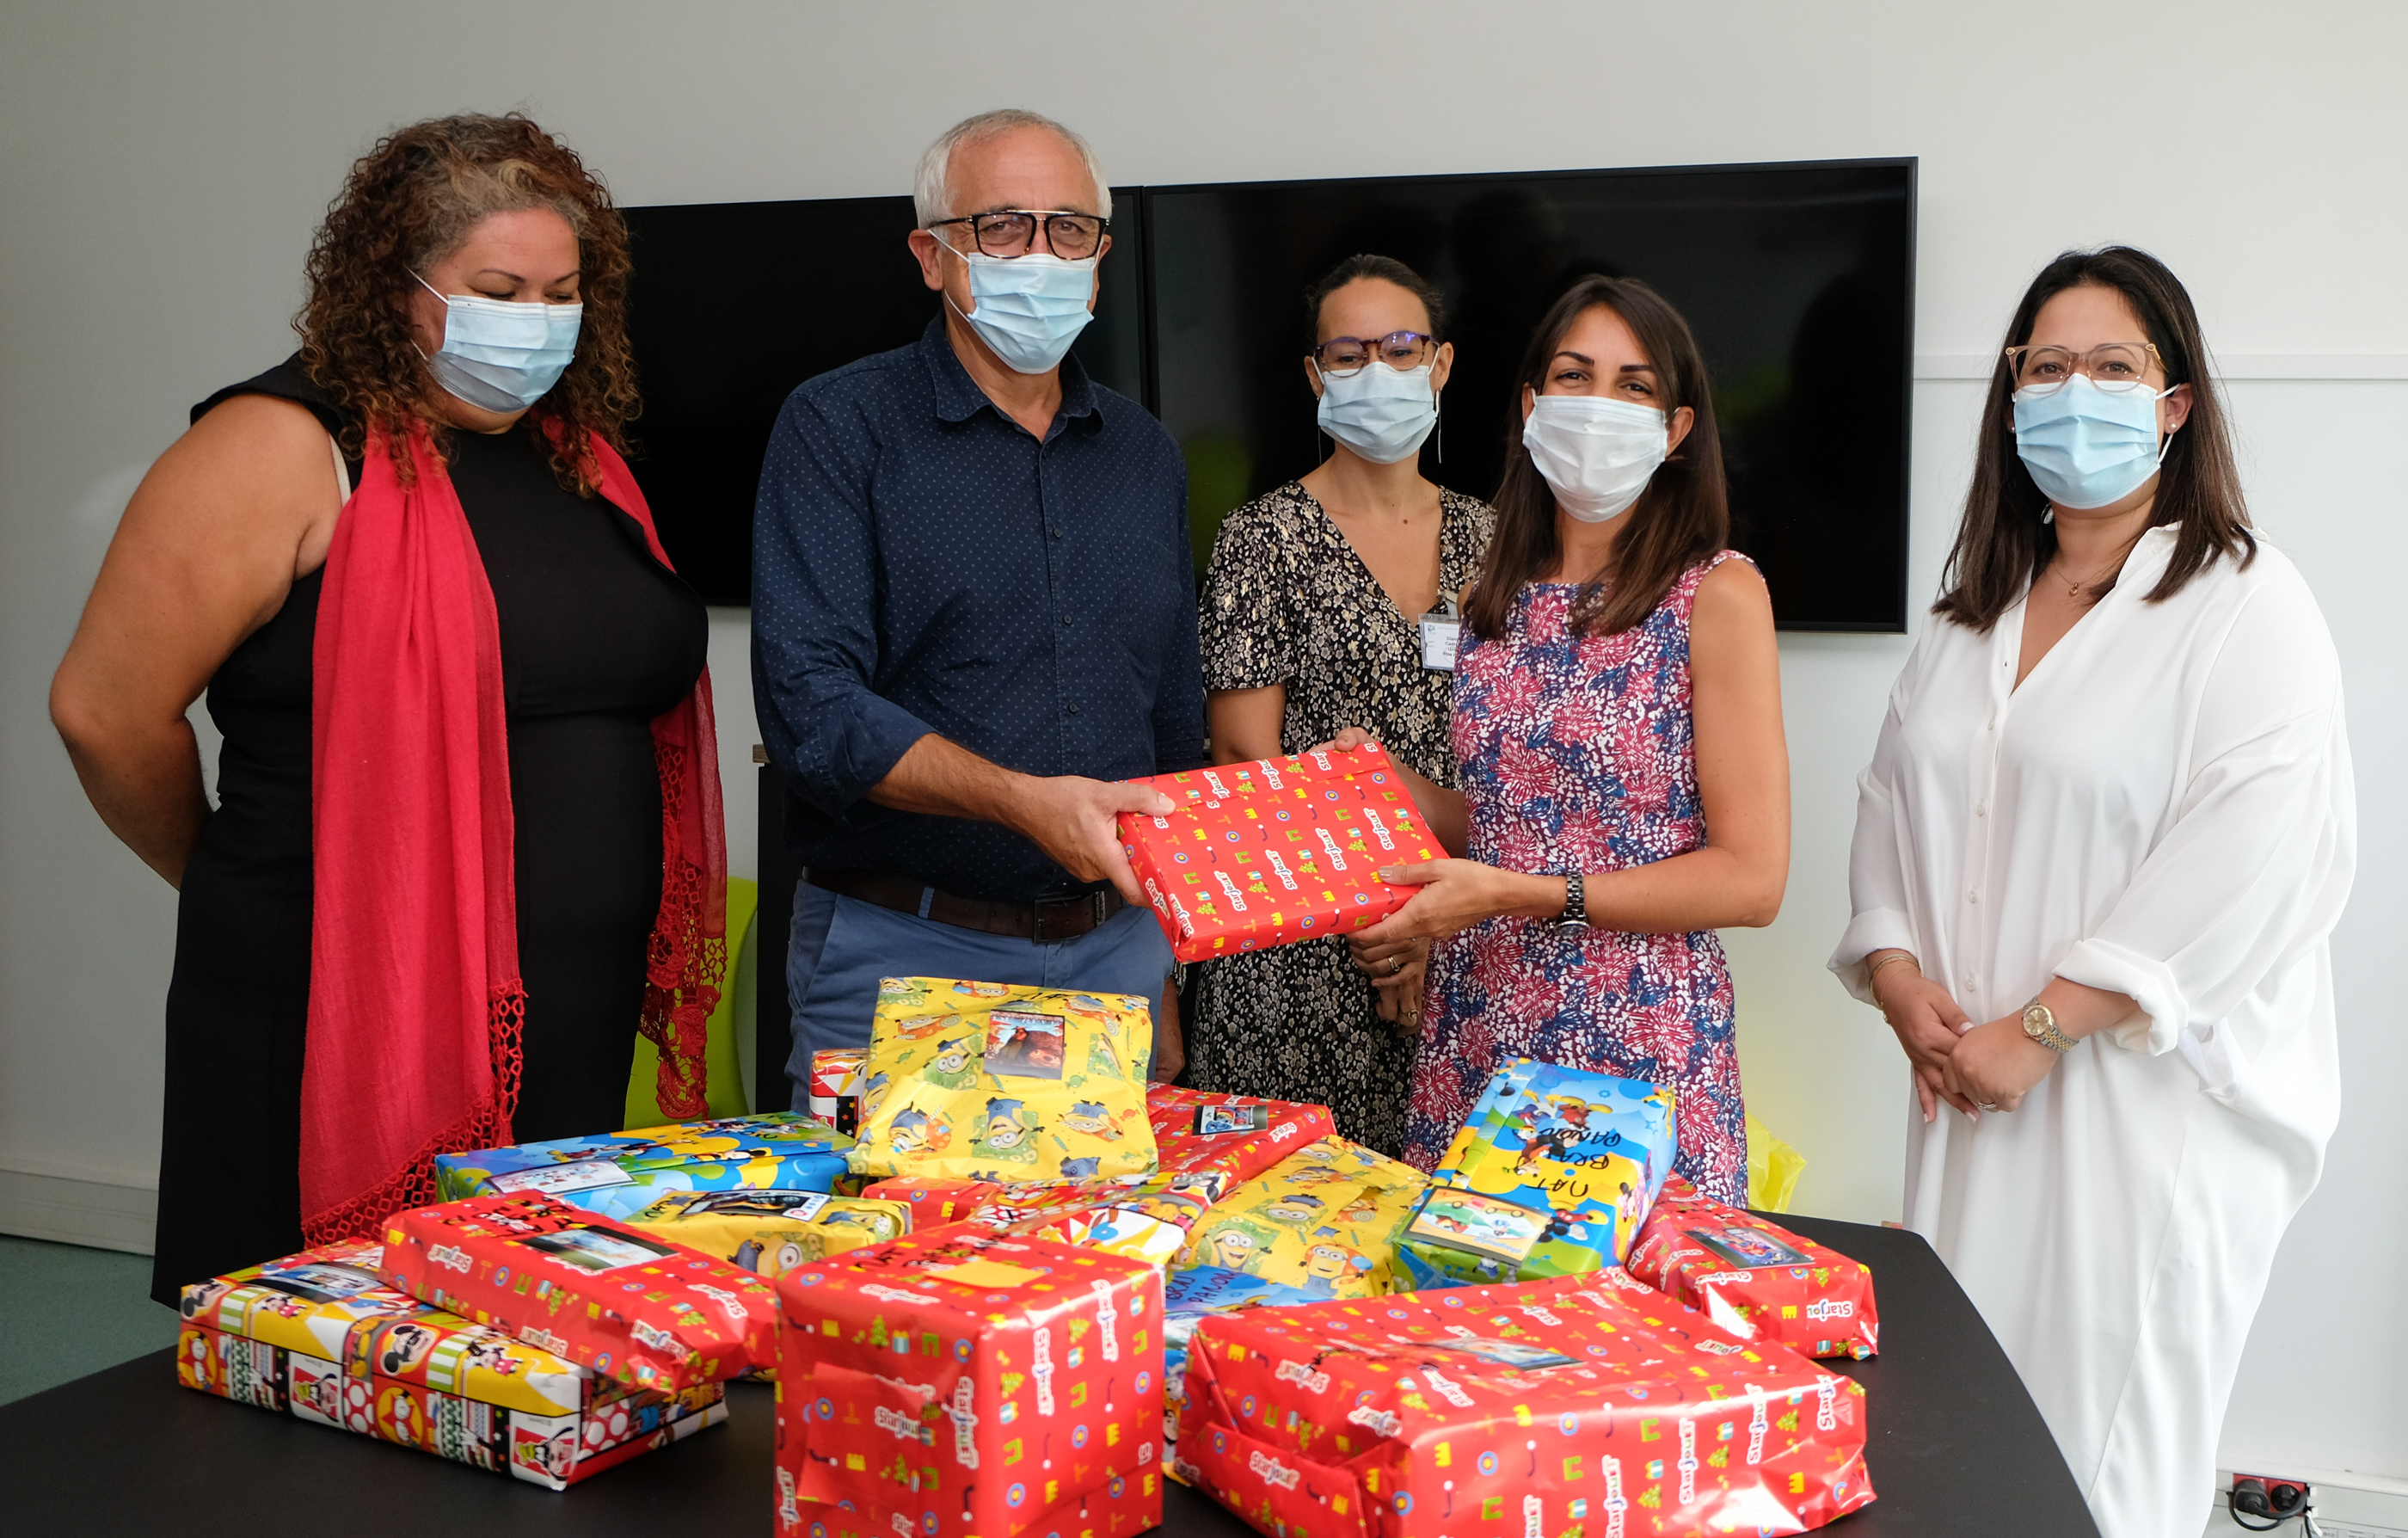 Noël à l’Hôpital : Les Notaires de la Réunion offrent des cadeaux aux petits patients du Centre Hospitalier Ouest Réunion et de l’Etablissement Publique de Santé Mentale de La Réunion